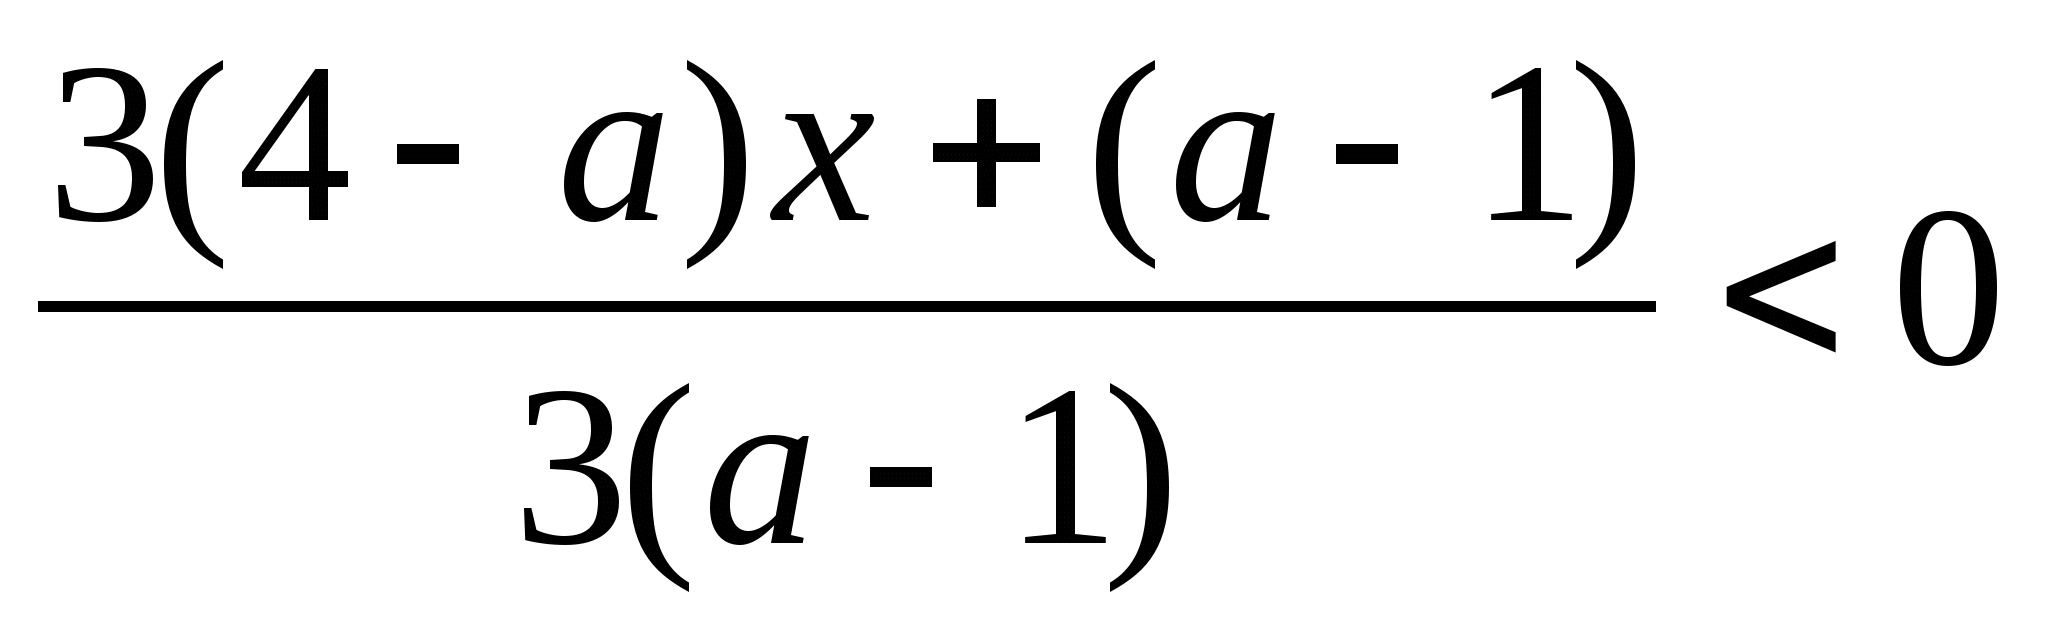 Конспект урока по математике на тему Уравнения и неравенства с параметрами (9 класс)